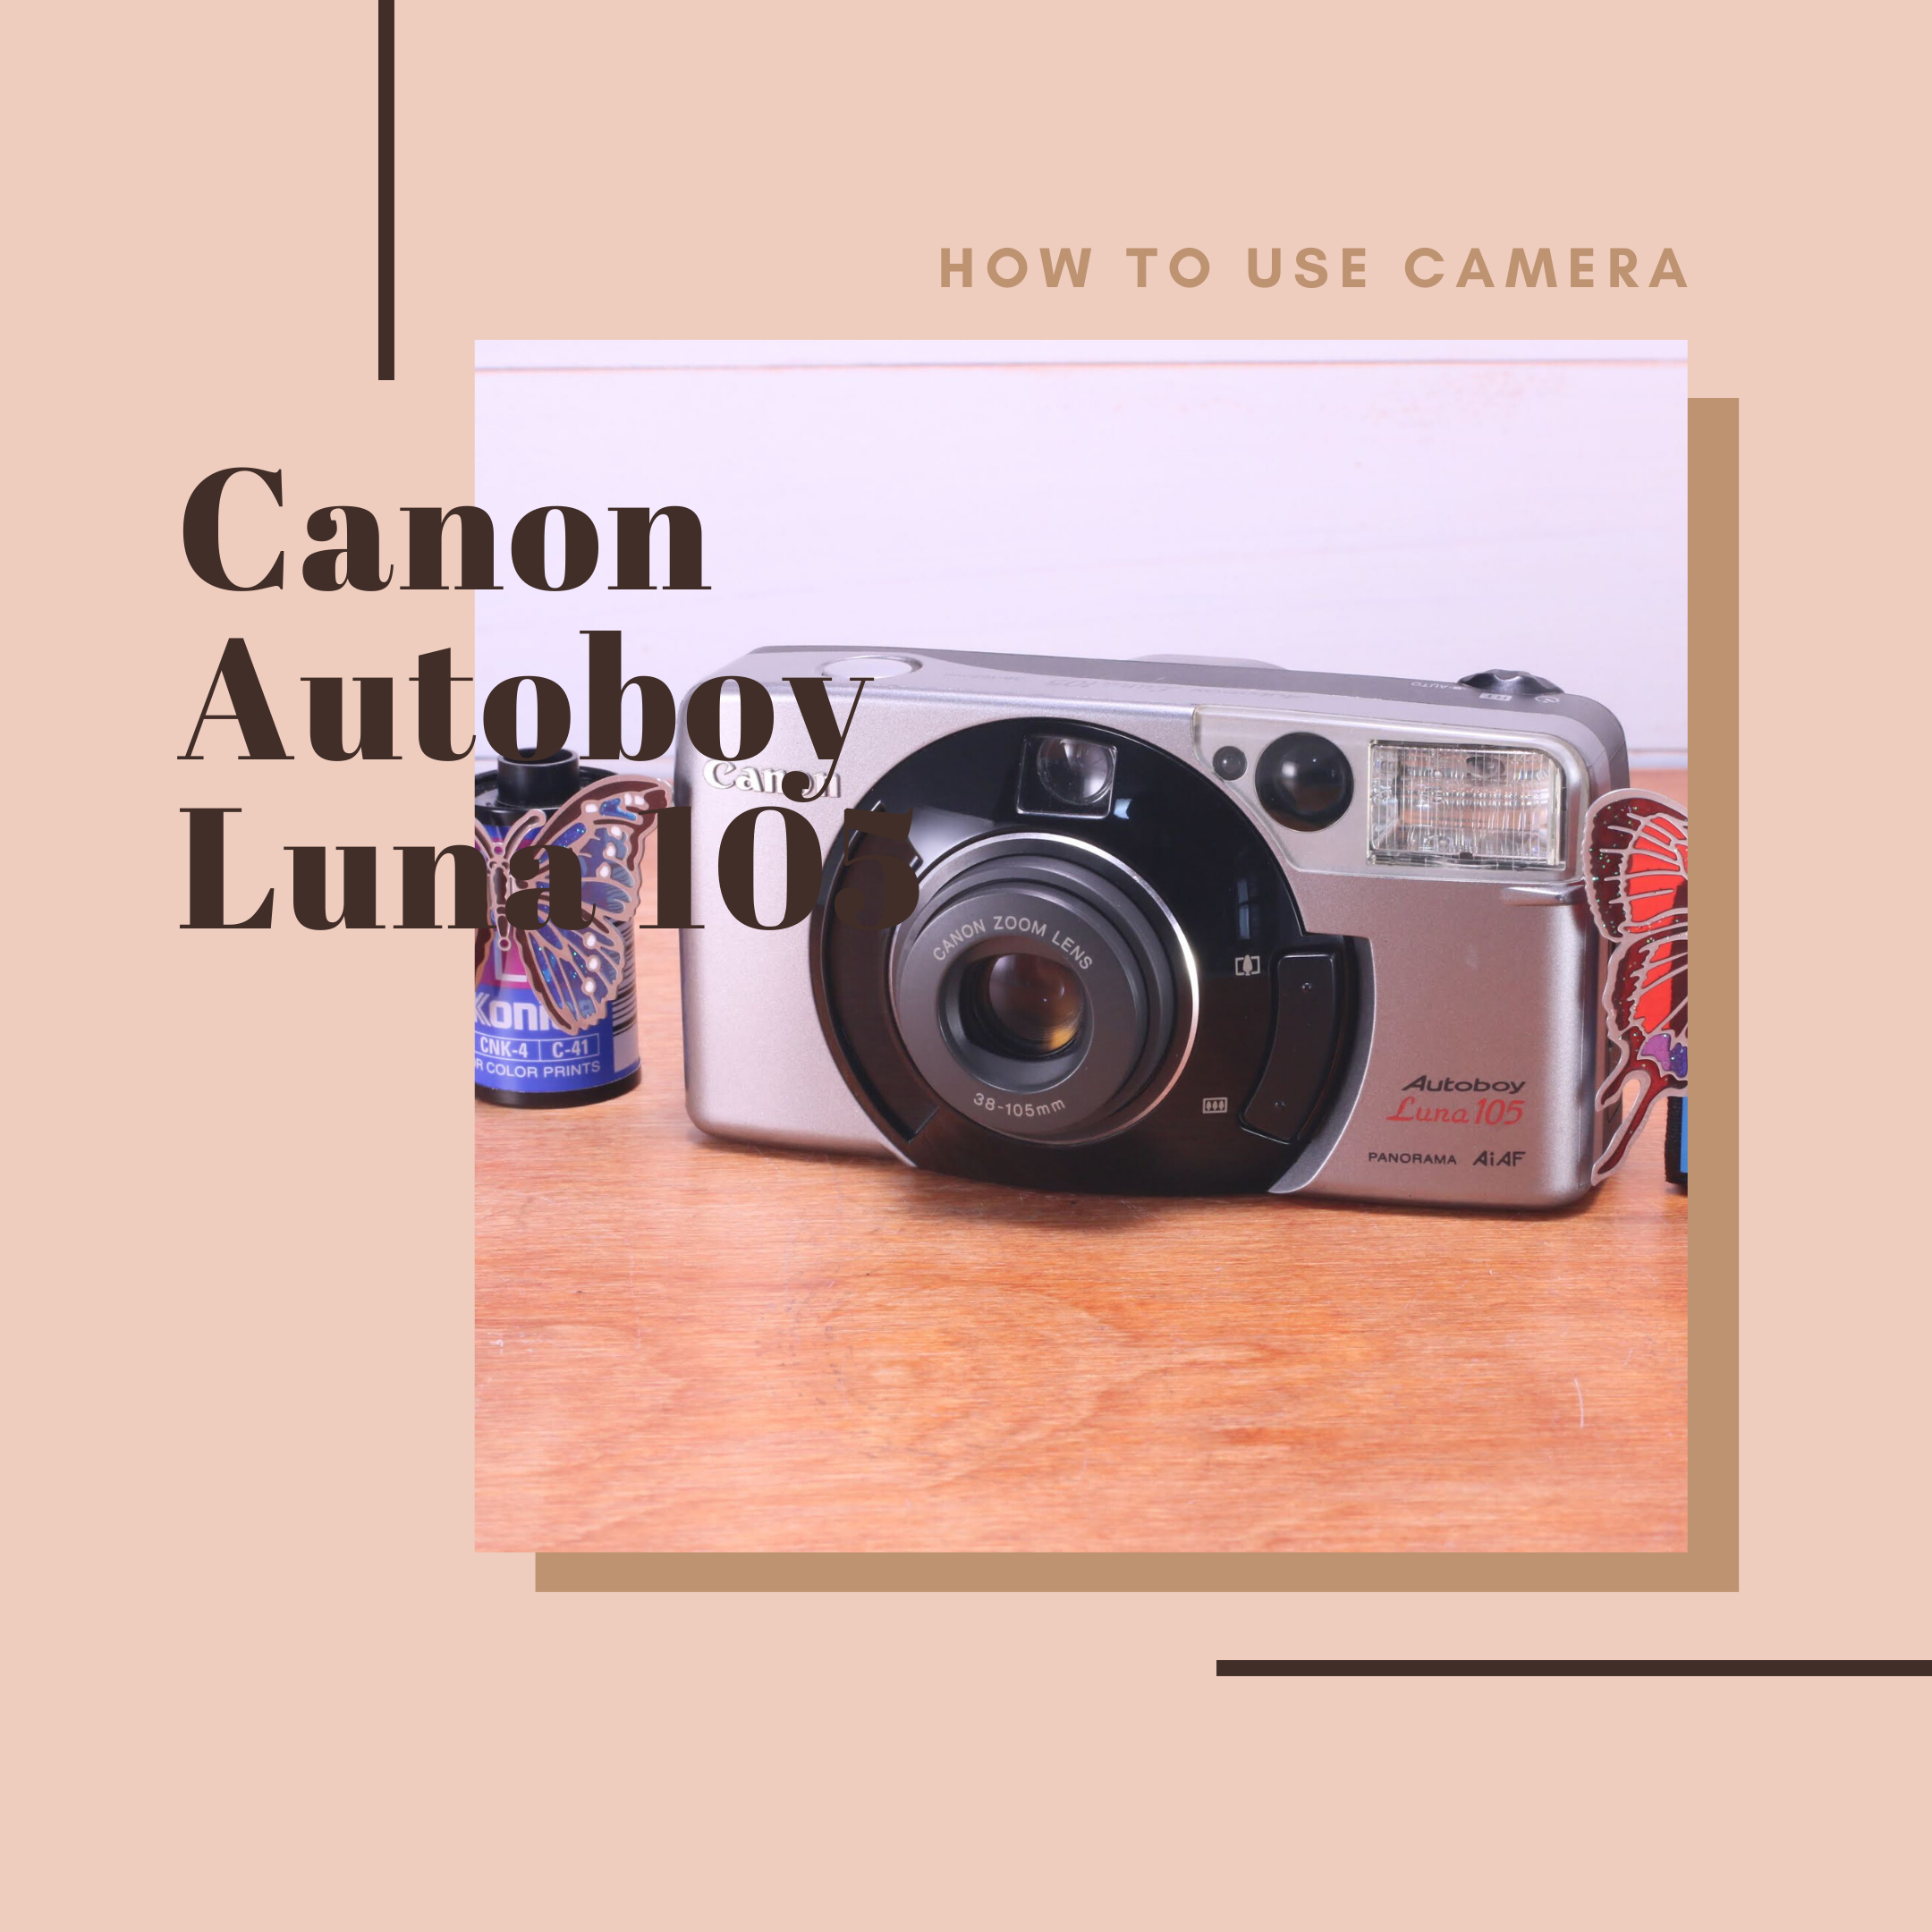 Canon Autoboy Luna 105 の使い方 | Totte Me Camera